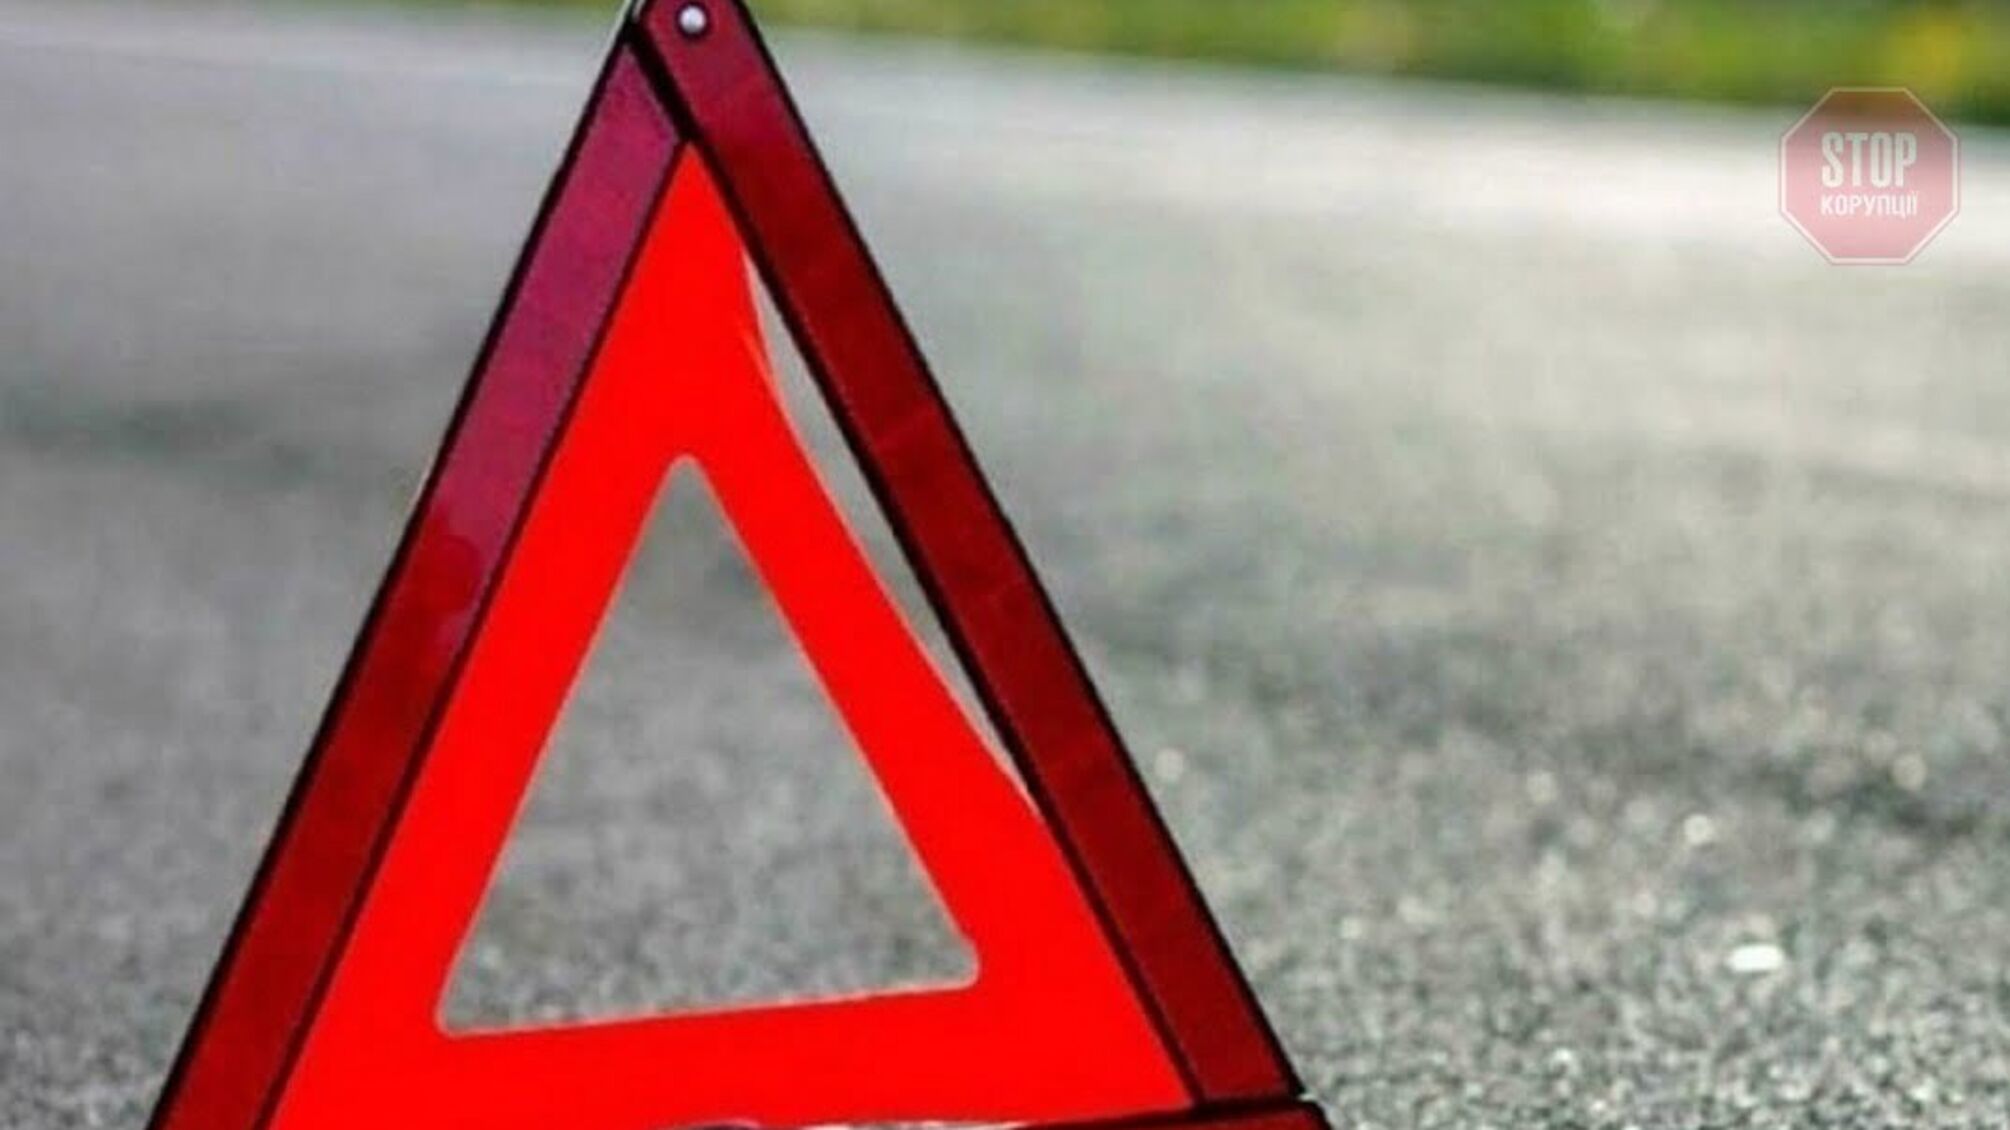 Новости Днепра: автомобиль на скорости сбил двух человек возле города, есть погибший (видео)